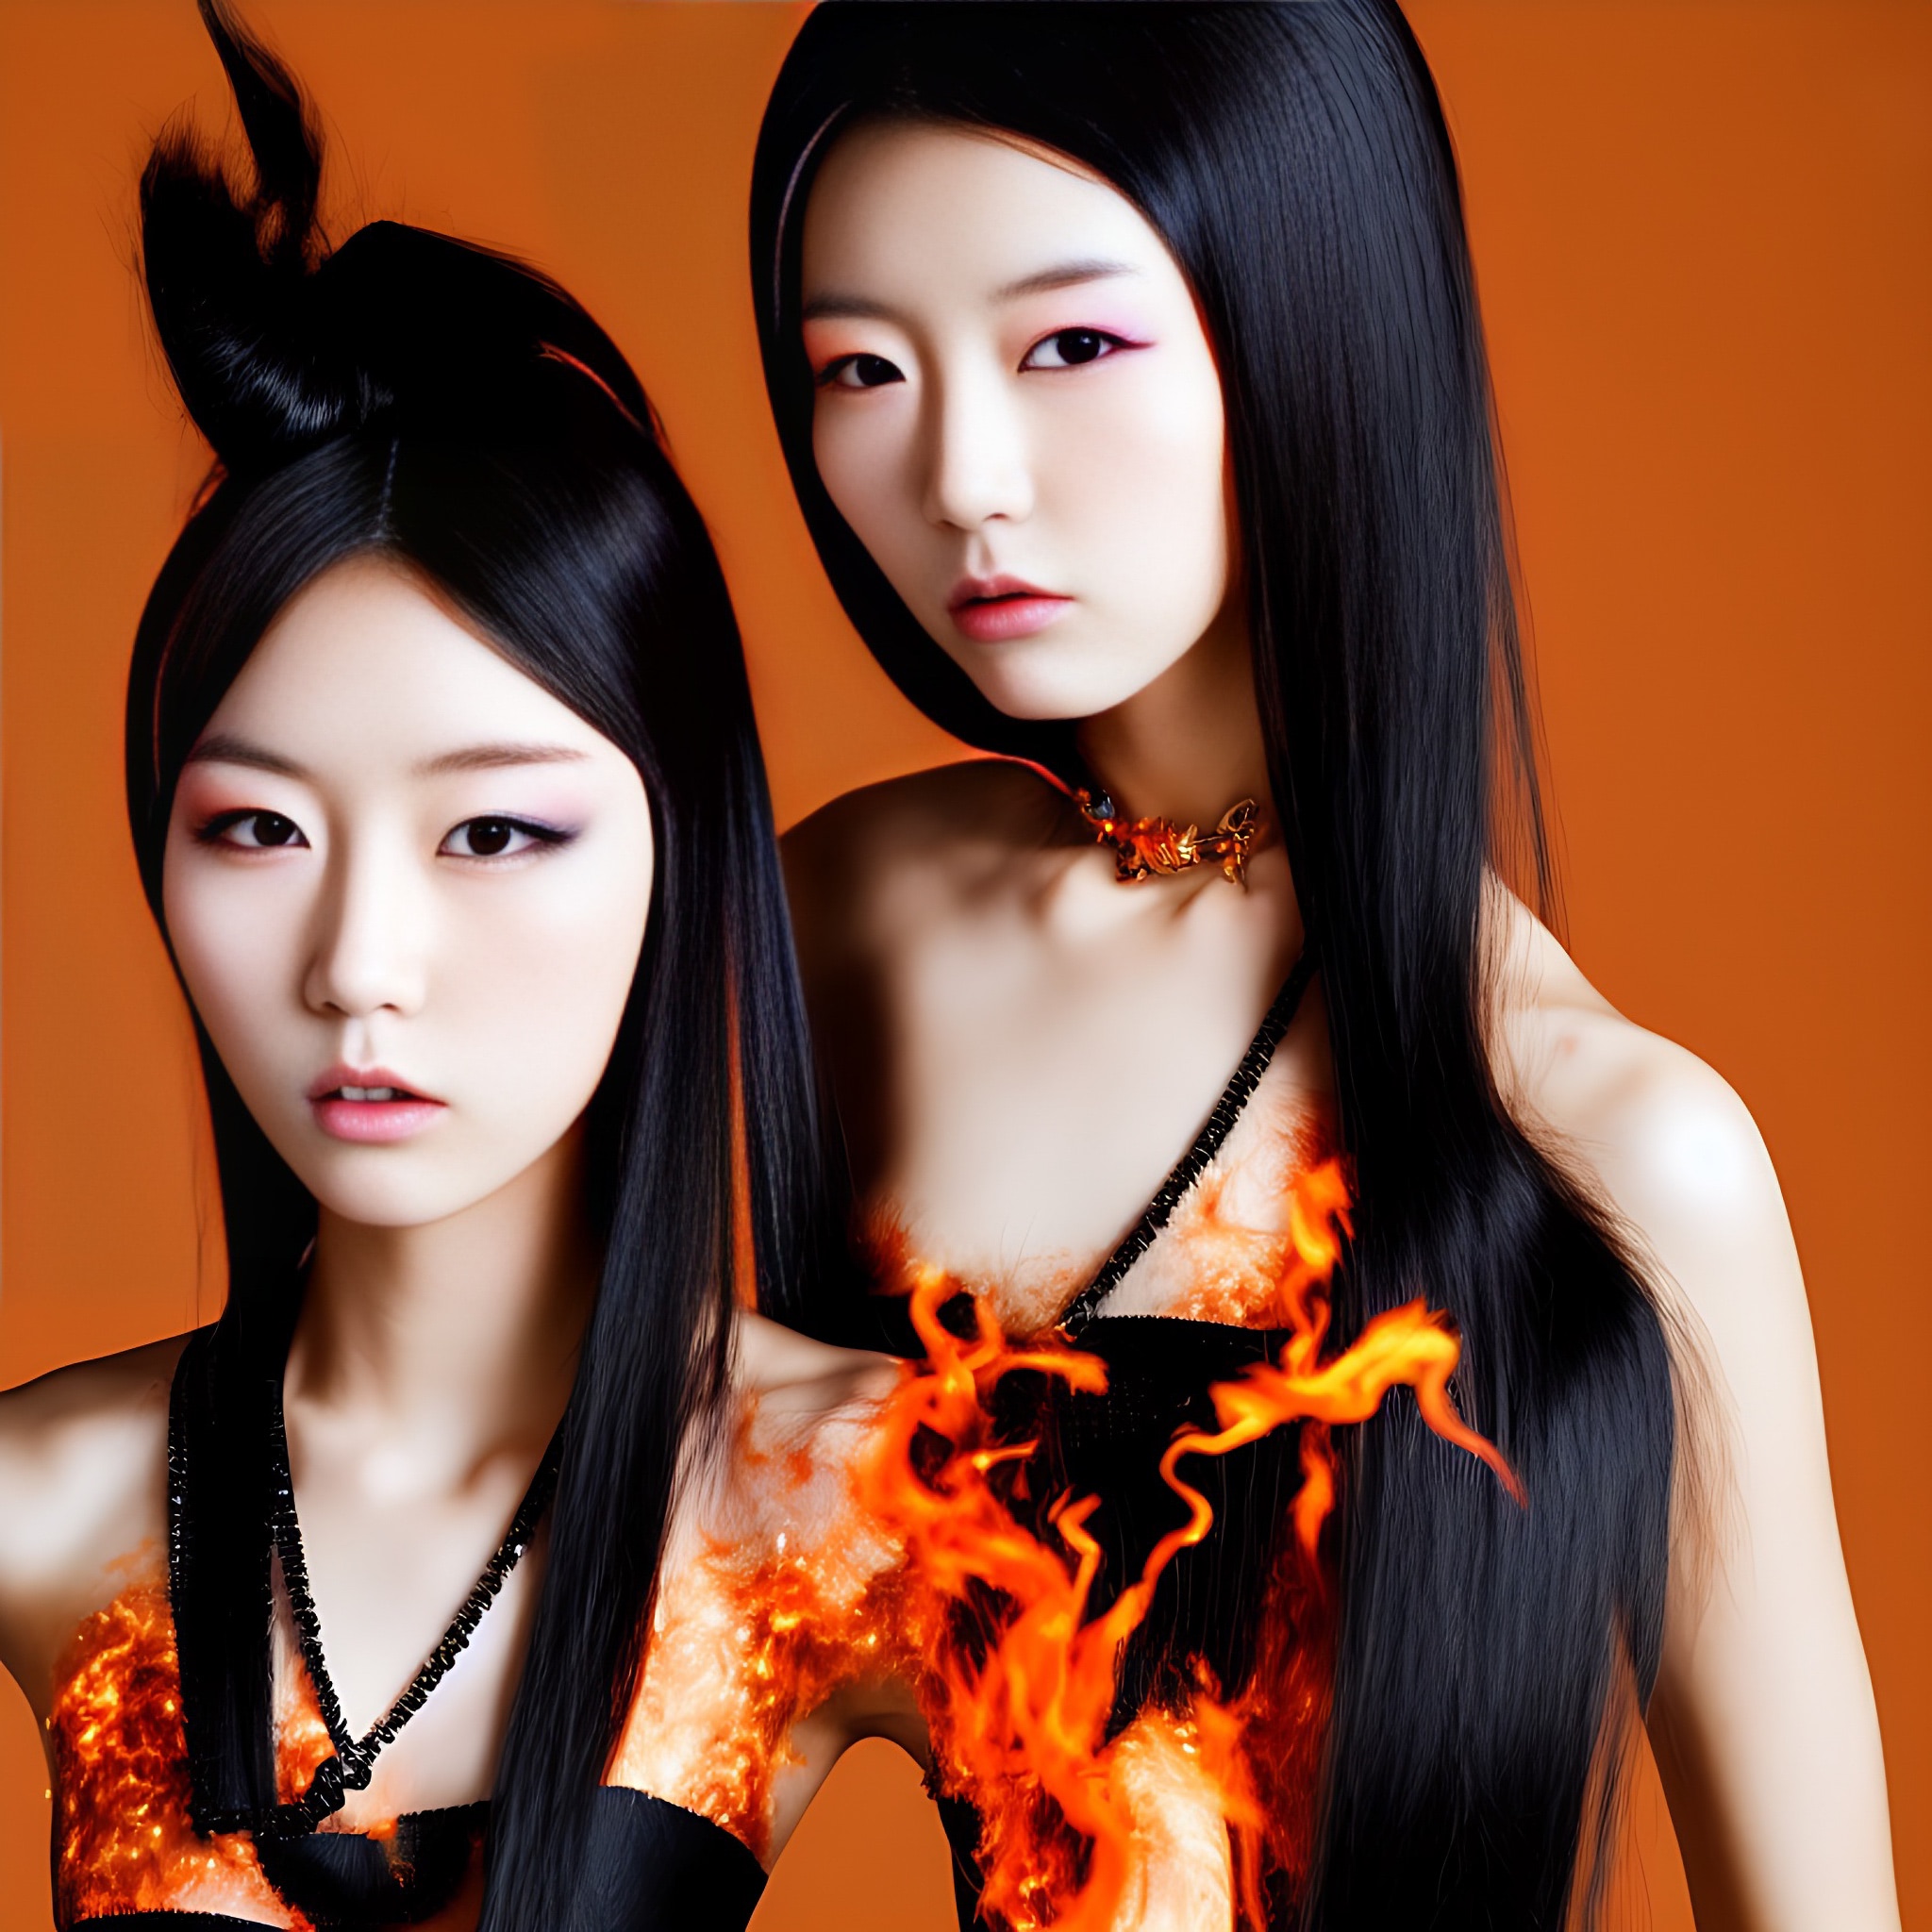 dress-korea-model-fashion-flames-fire